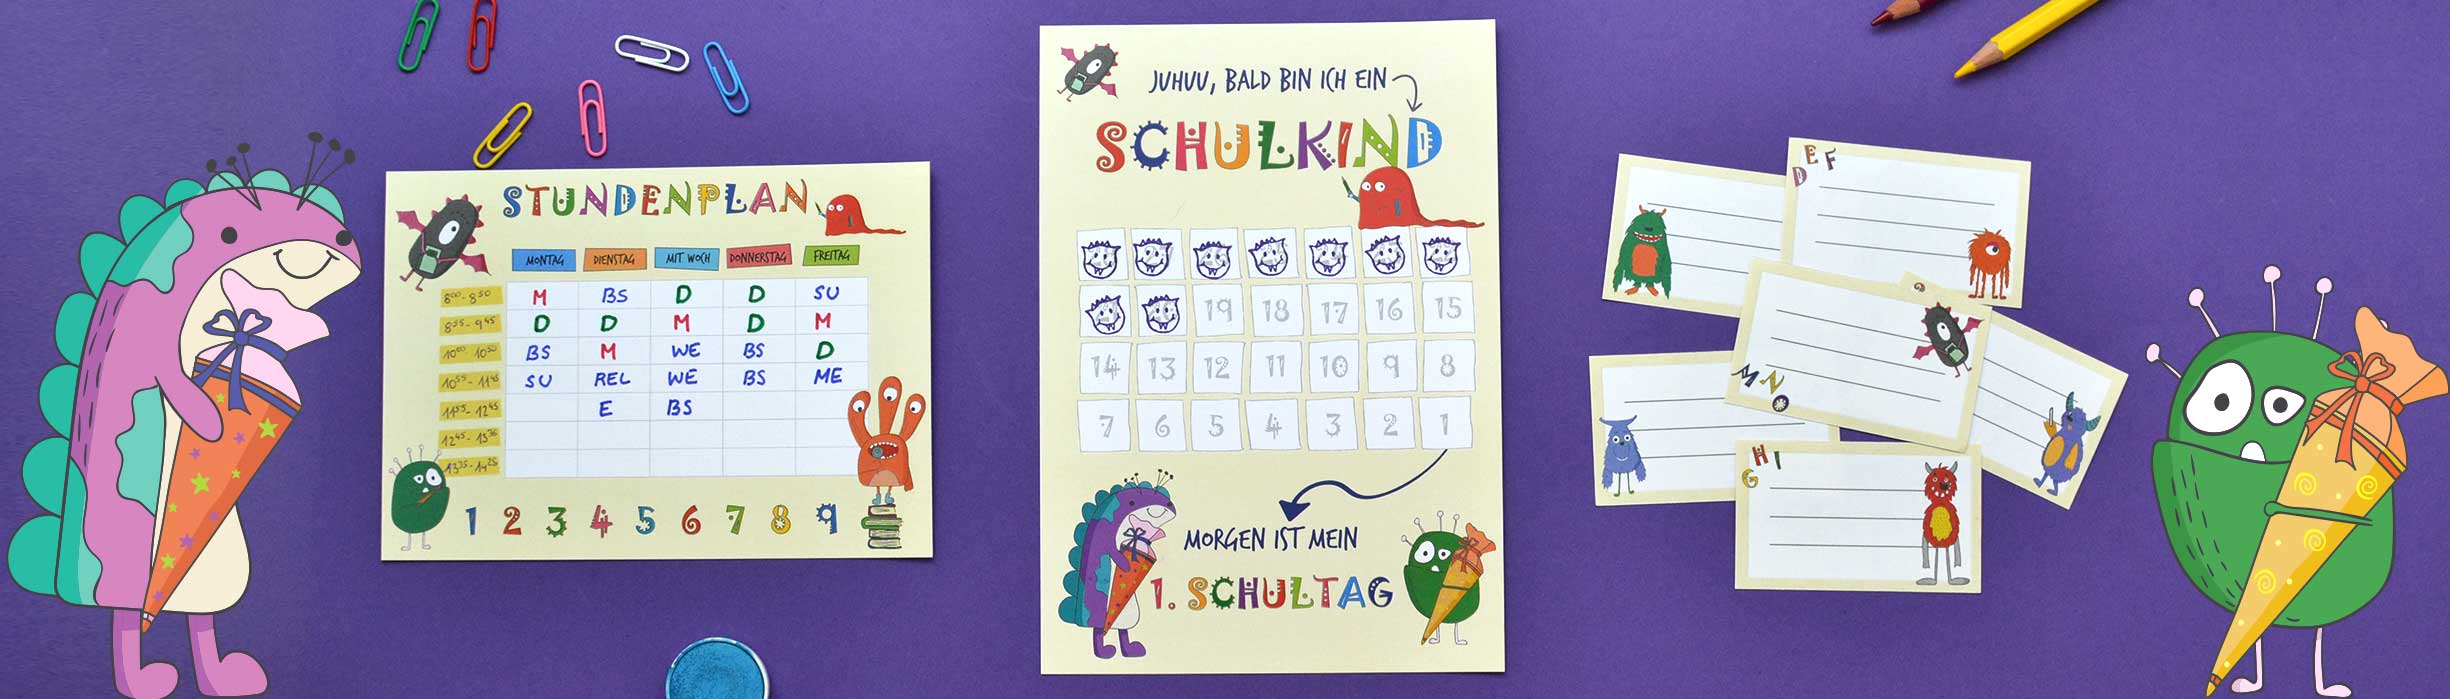 Freebie zur Einschulung mit Stundenplan, Hefteteiketten und Countdown für die Grundschule und Volksschule